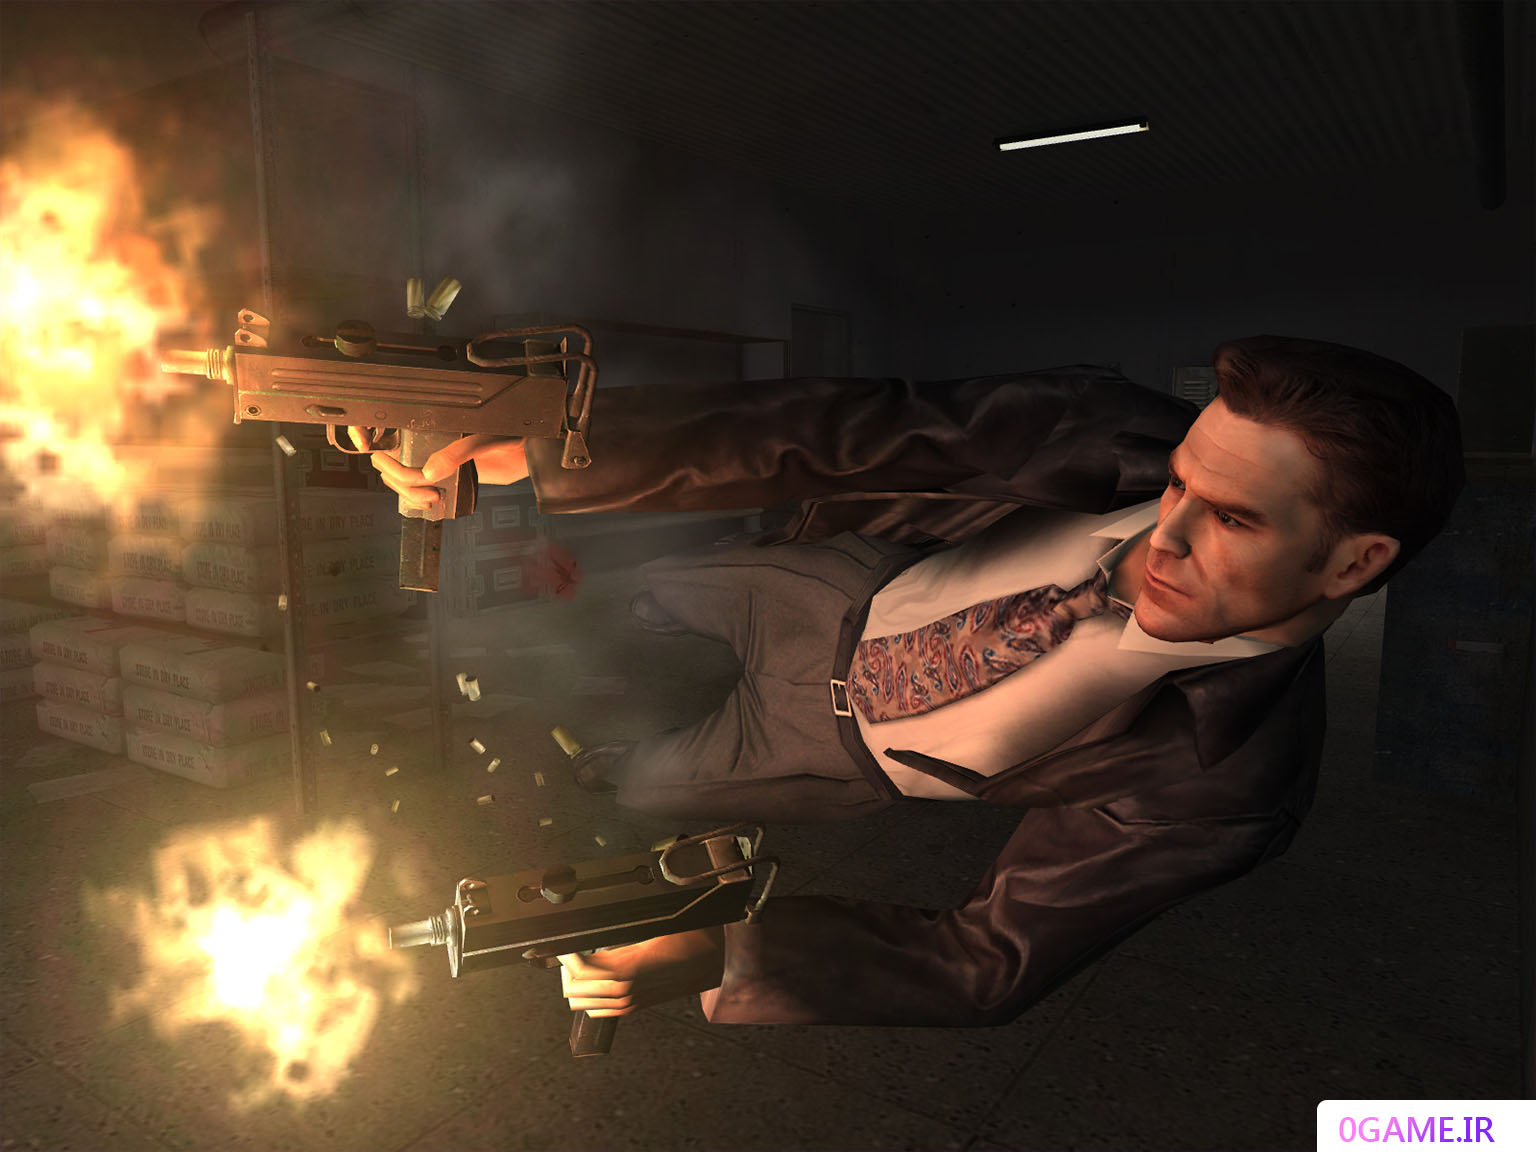 دانلود بازی مکس پین 2 (Max Payne) نسخه کامل برای کامپیوتر